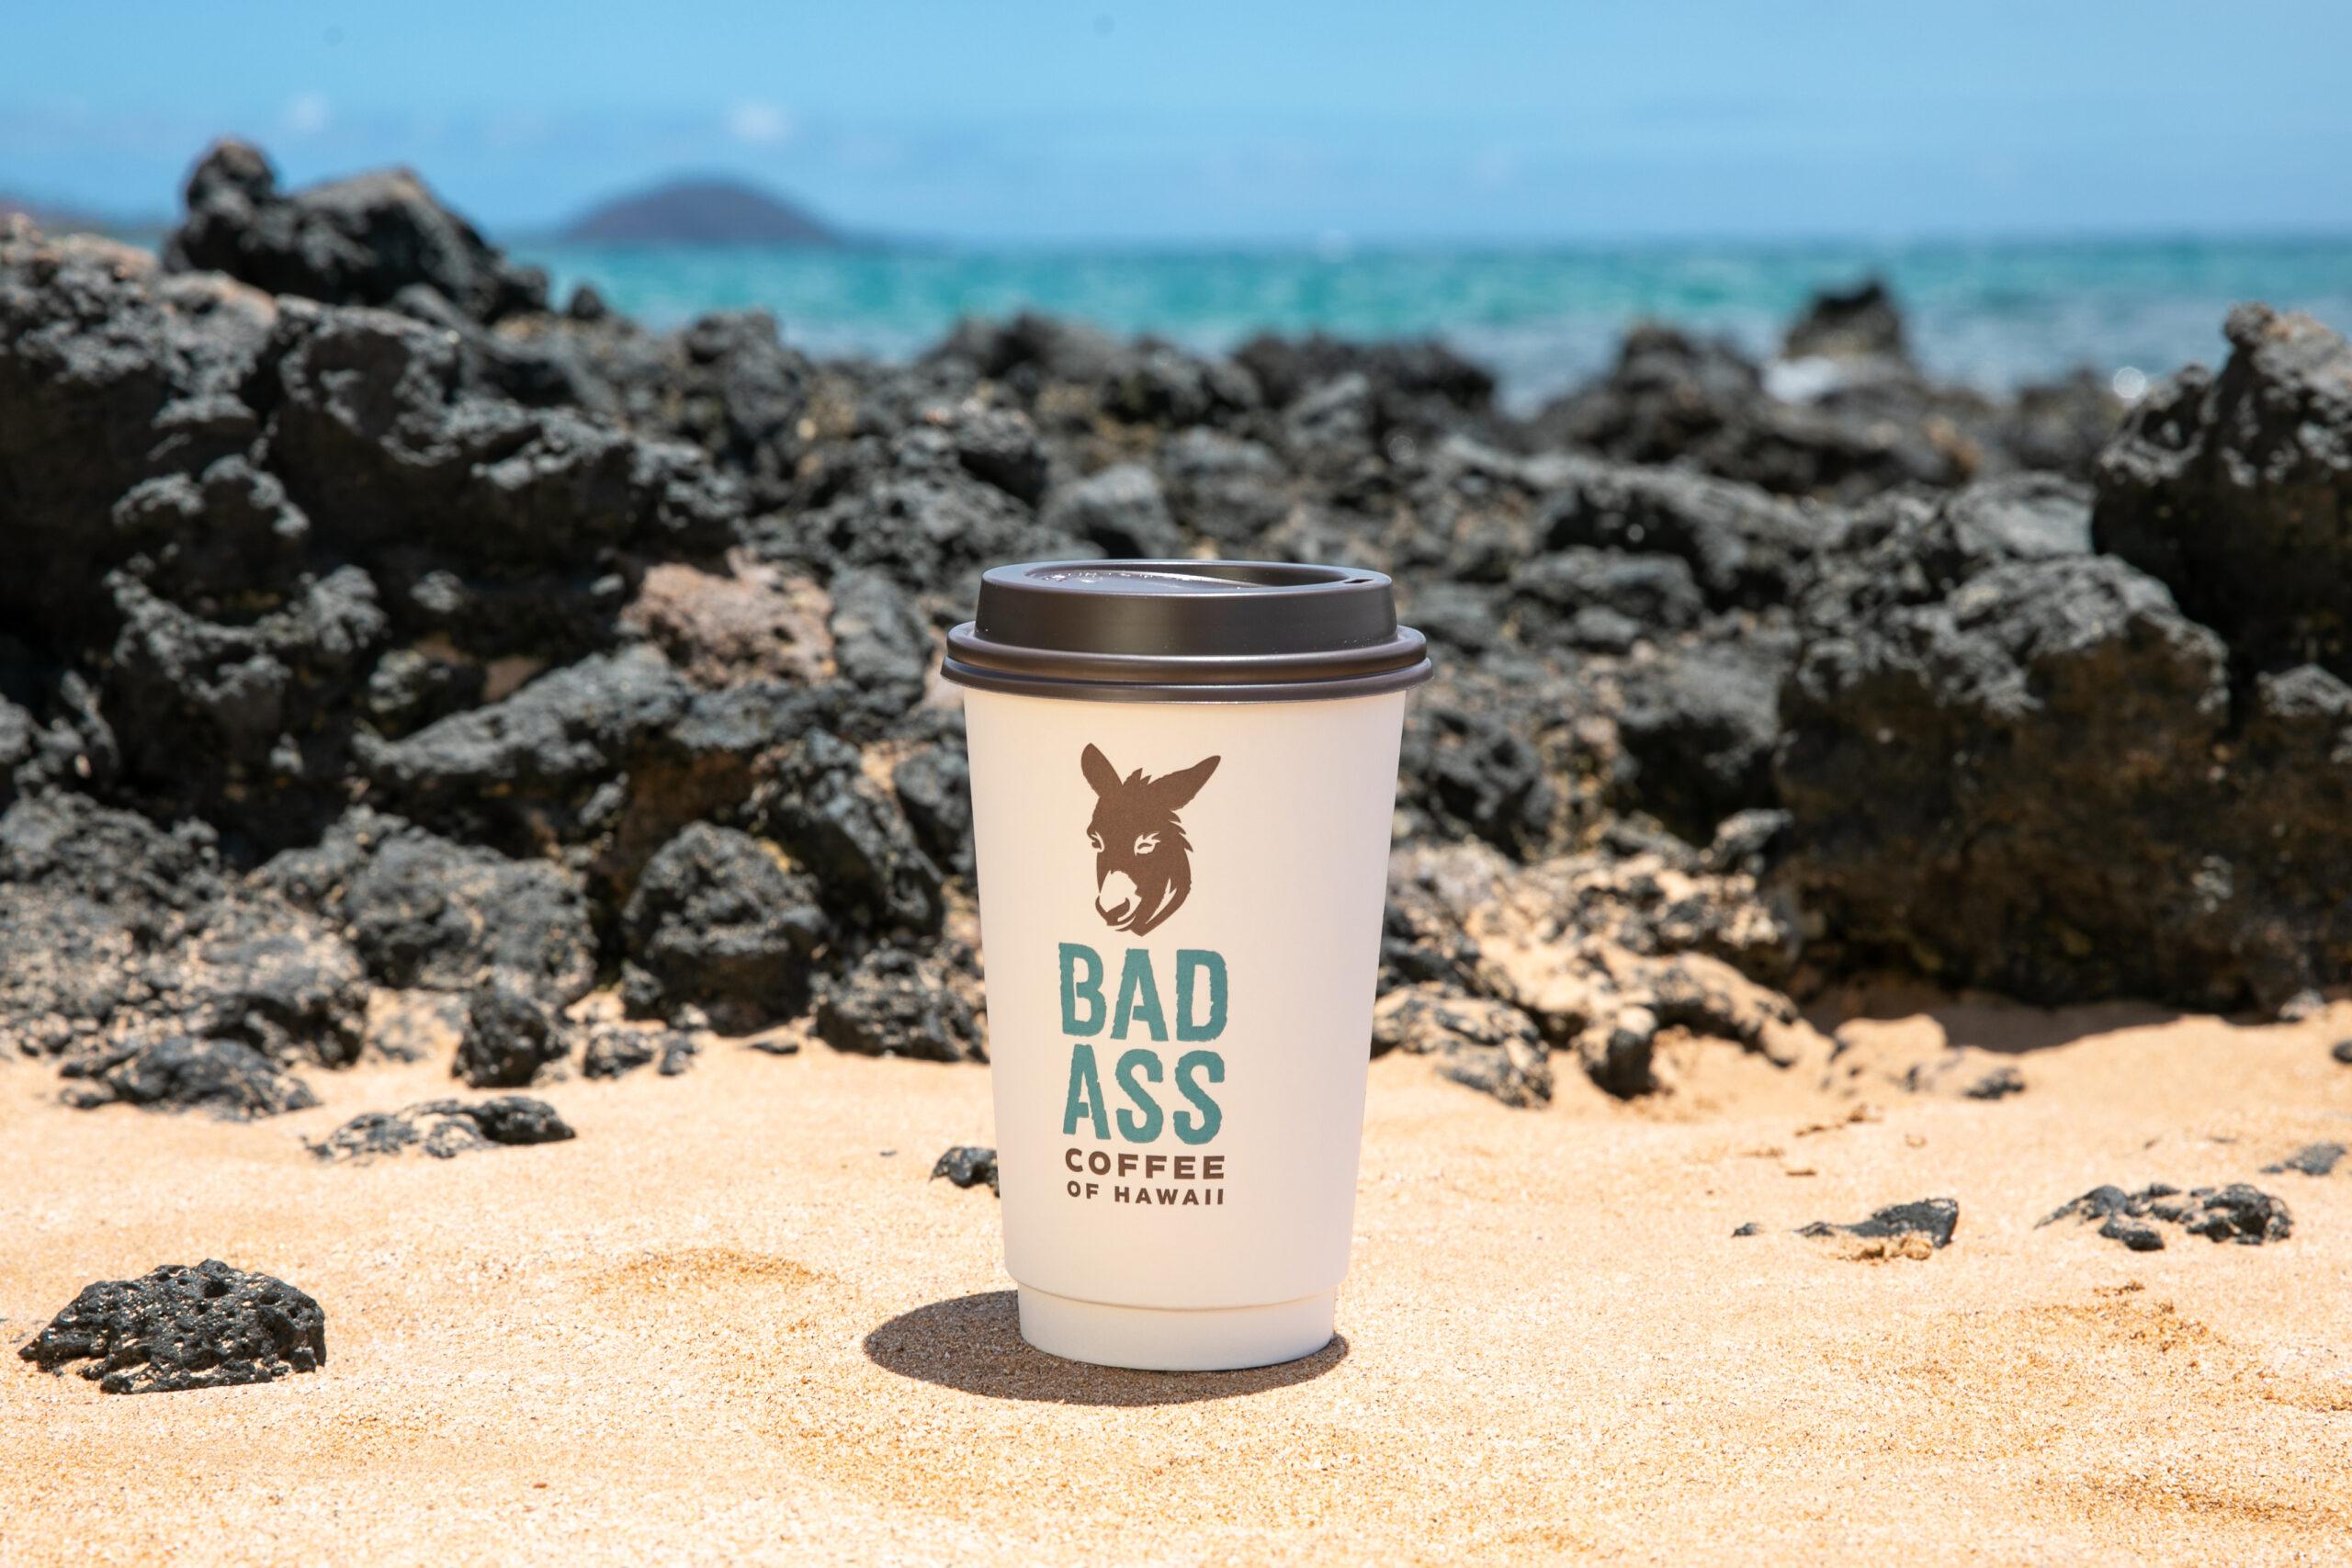 Leading Bad Ass Coffee Of Hawaii Brand S Homecoming